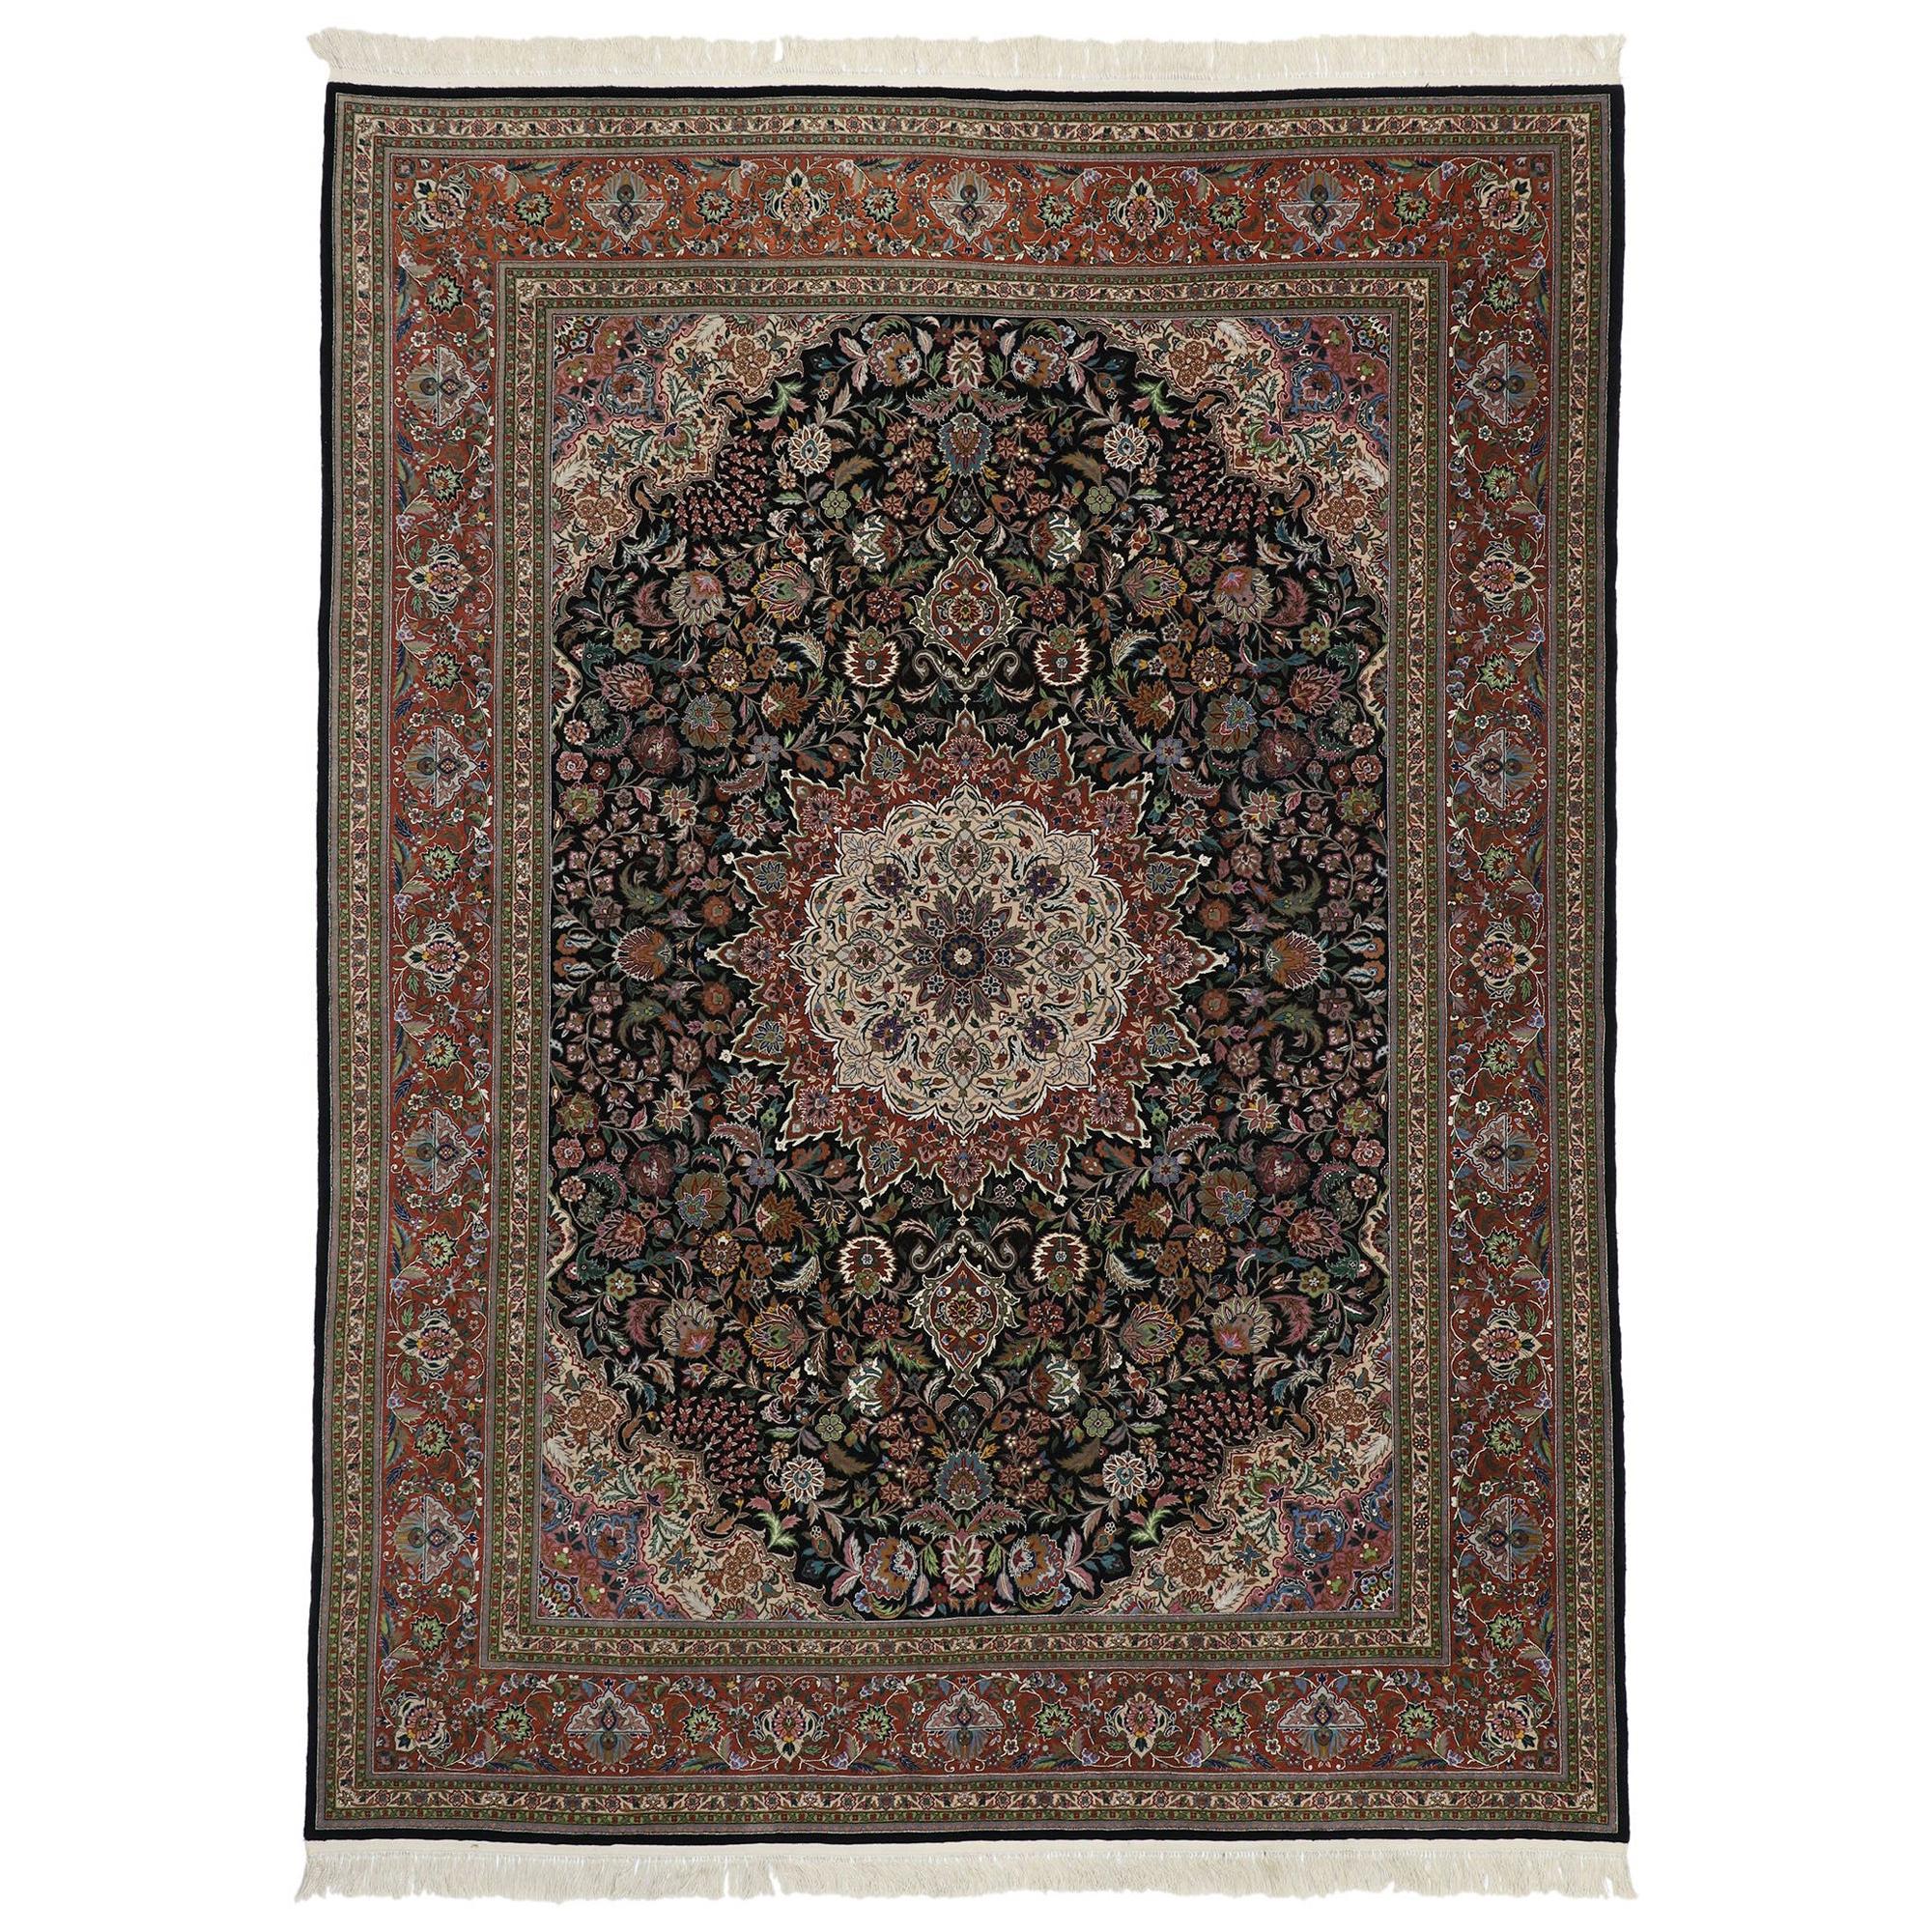 Vintage Chinesisch Persisch Tabriz Design Teppich mit viktorianischen Barock-Stil